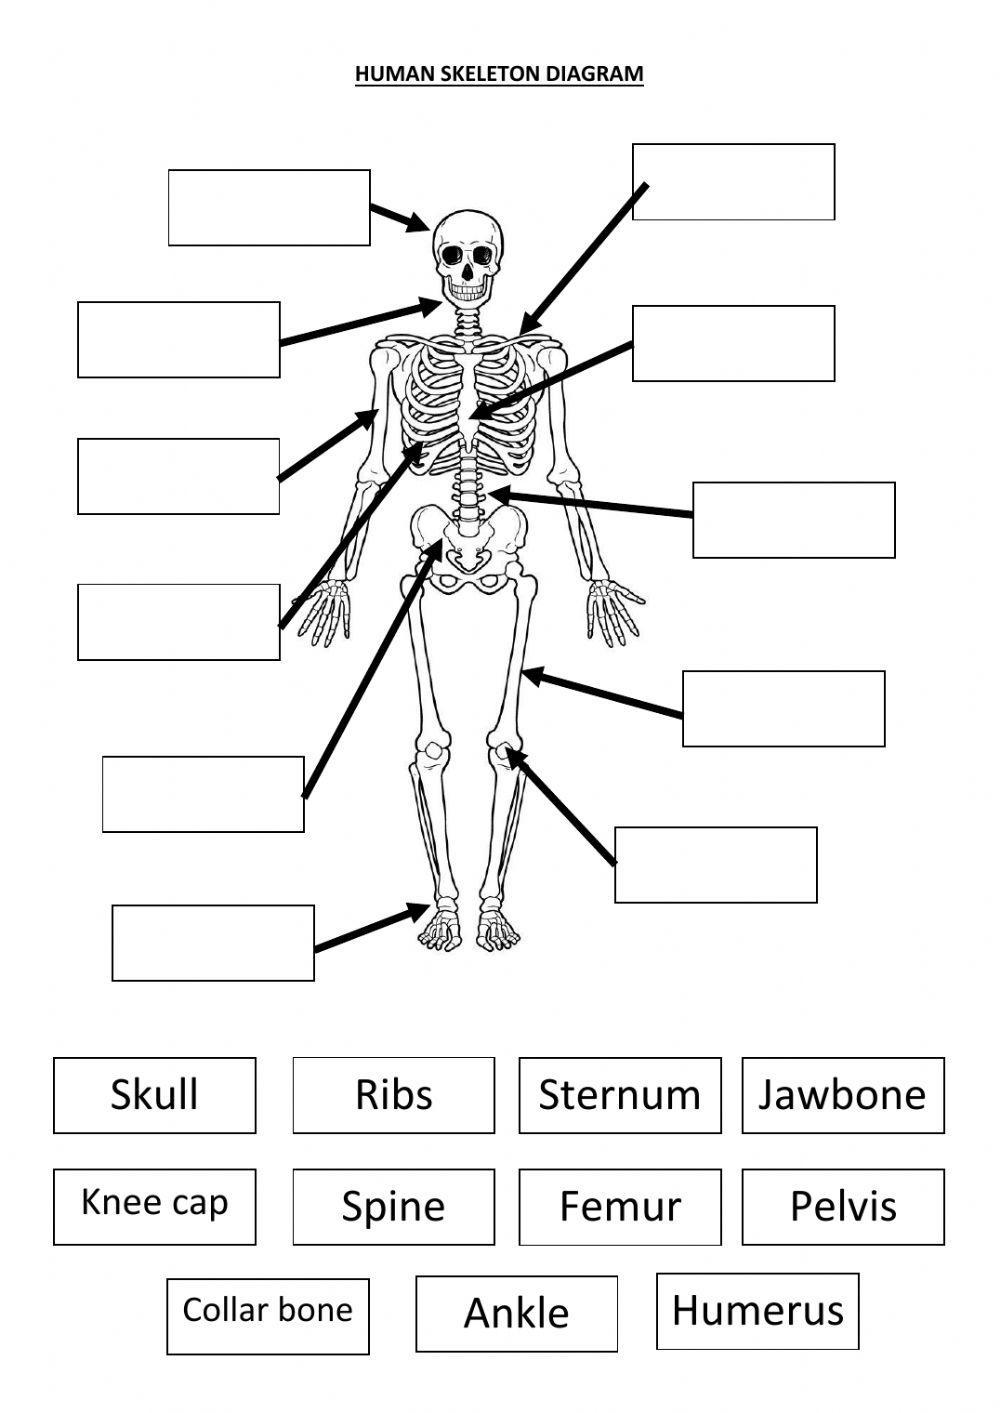 The Human skeleton